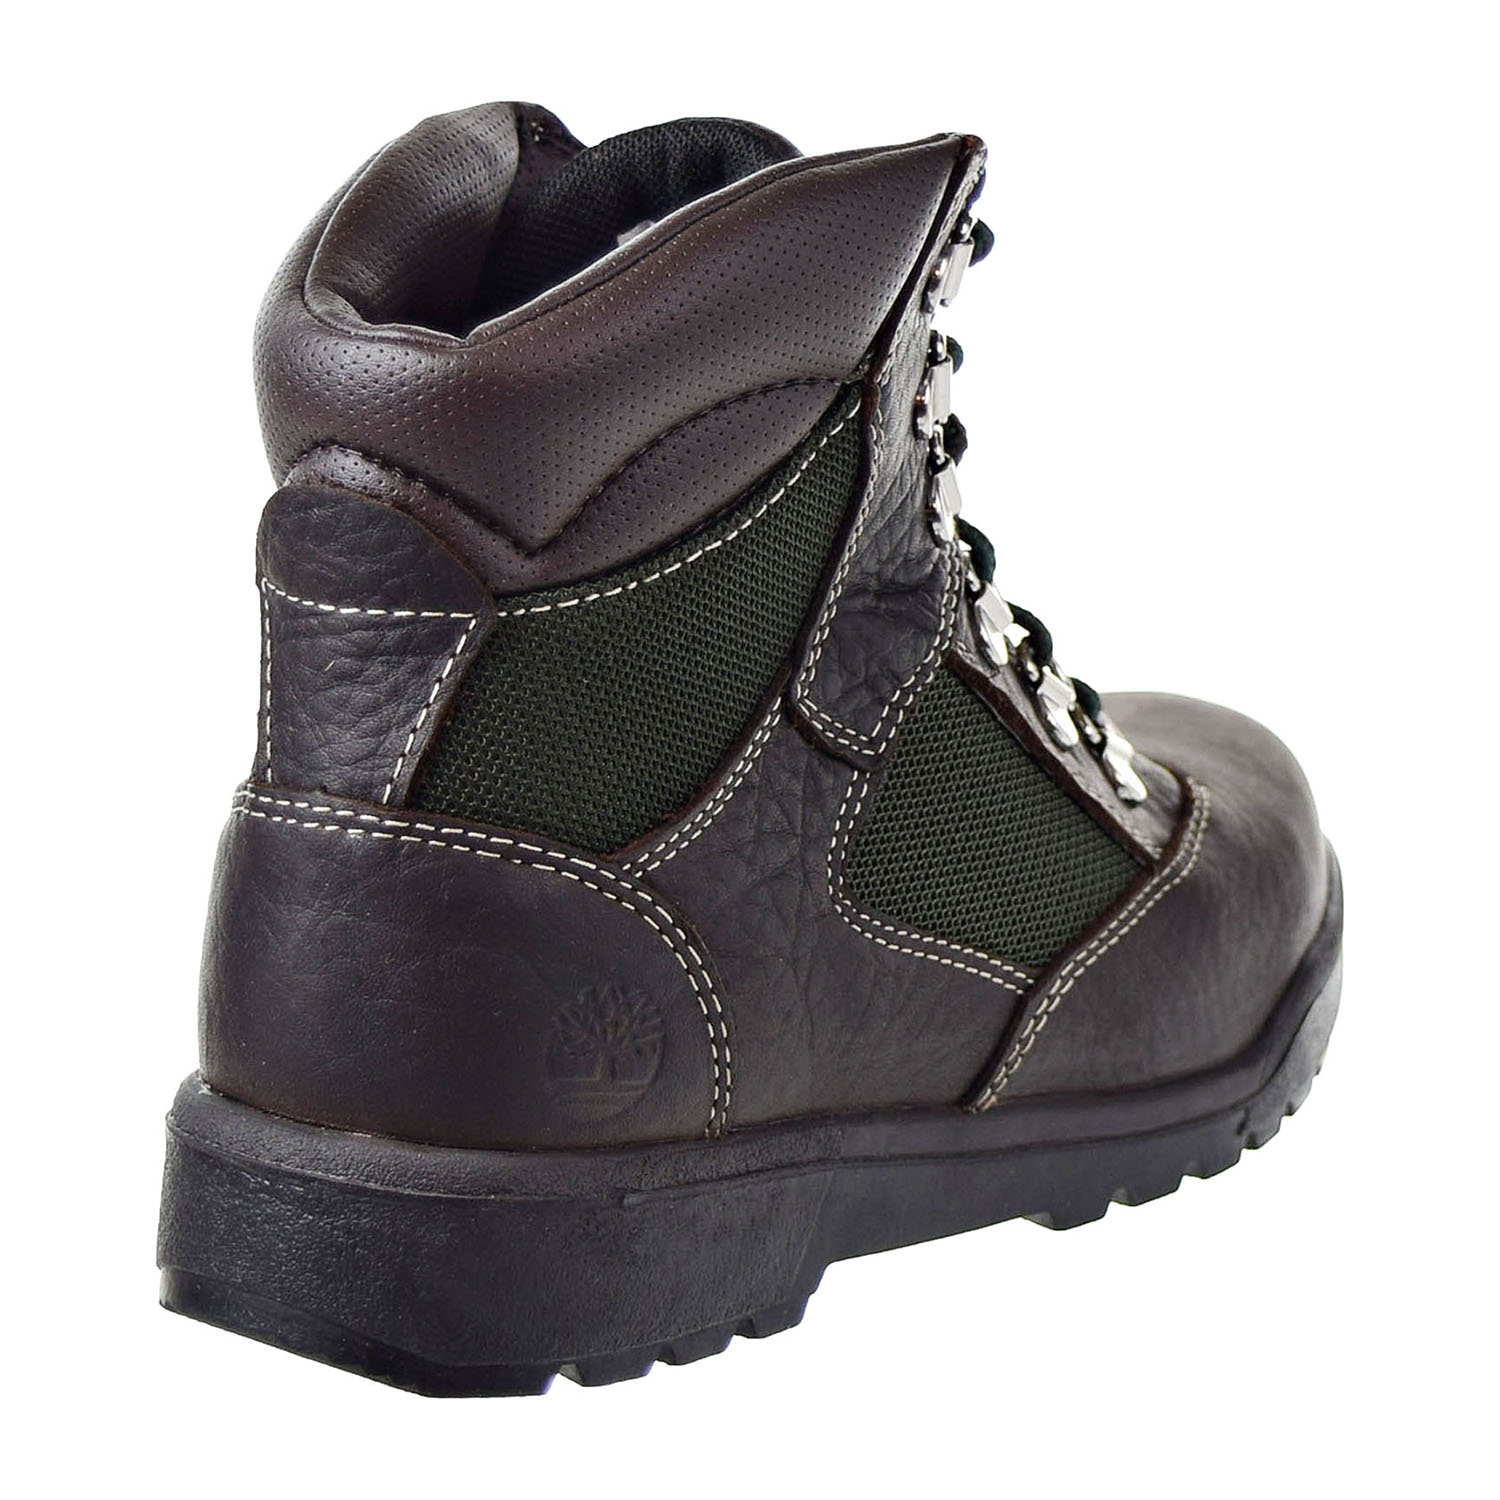 Timberland 6 Inch Field Big Kids Boots Dark Brown-Green tb0a1pn3 | eBay